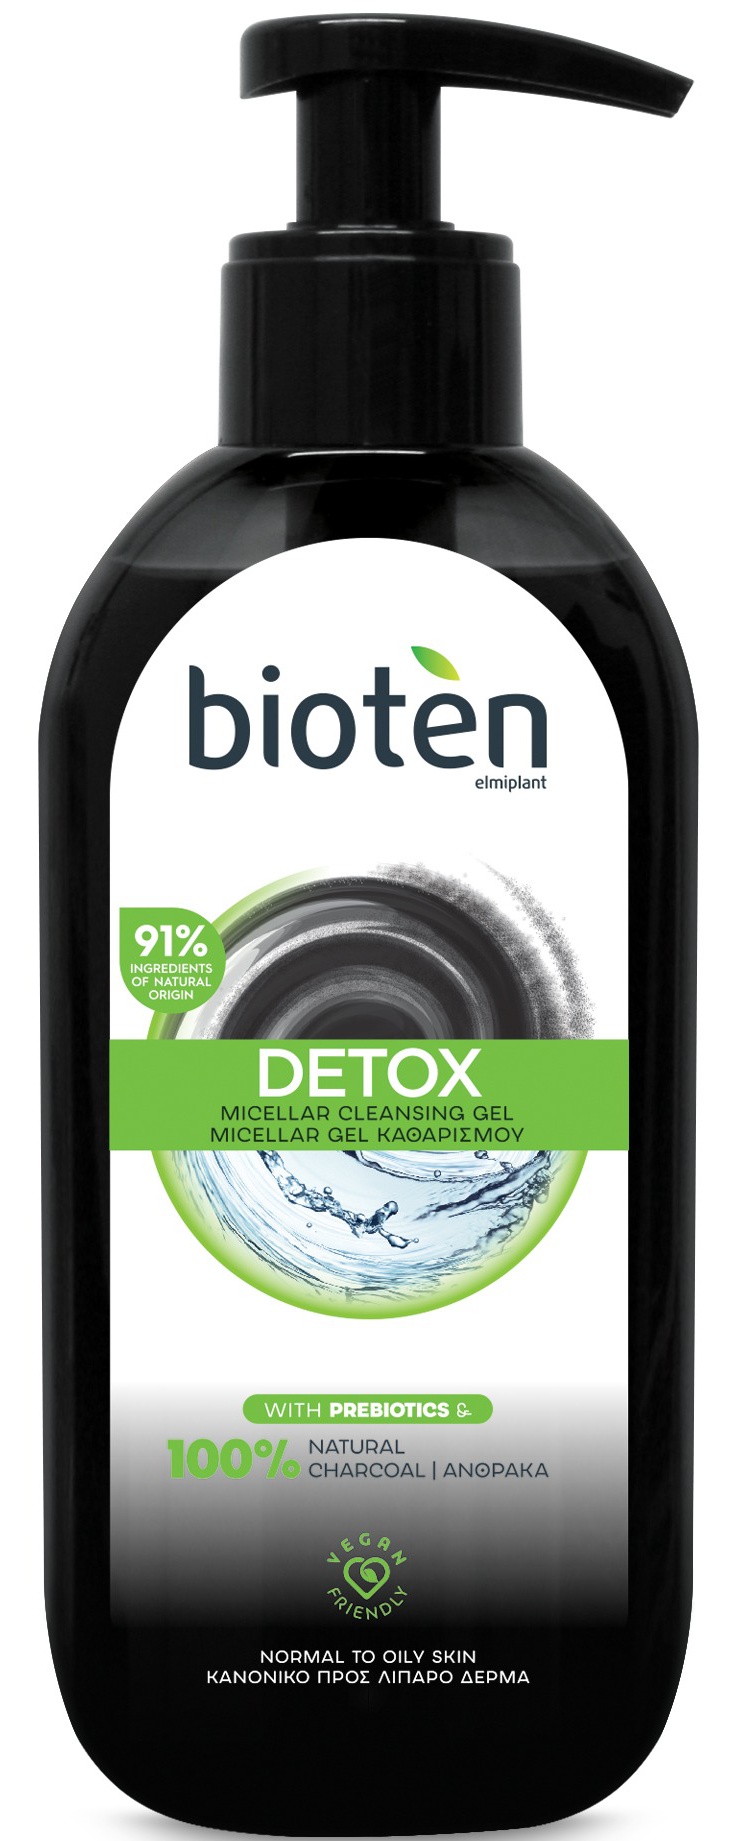 Bioten Detox Micellar Cleansing Gel